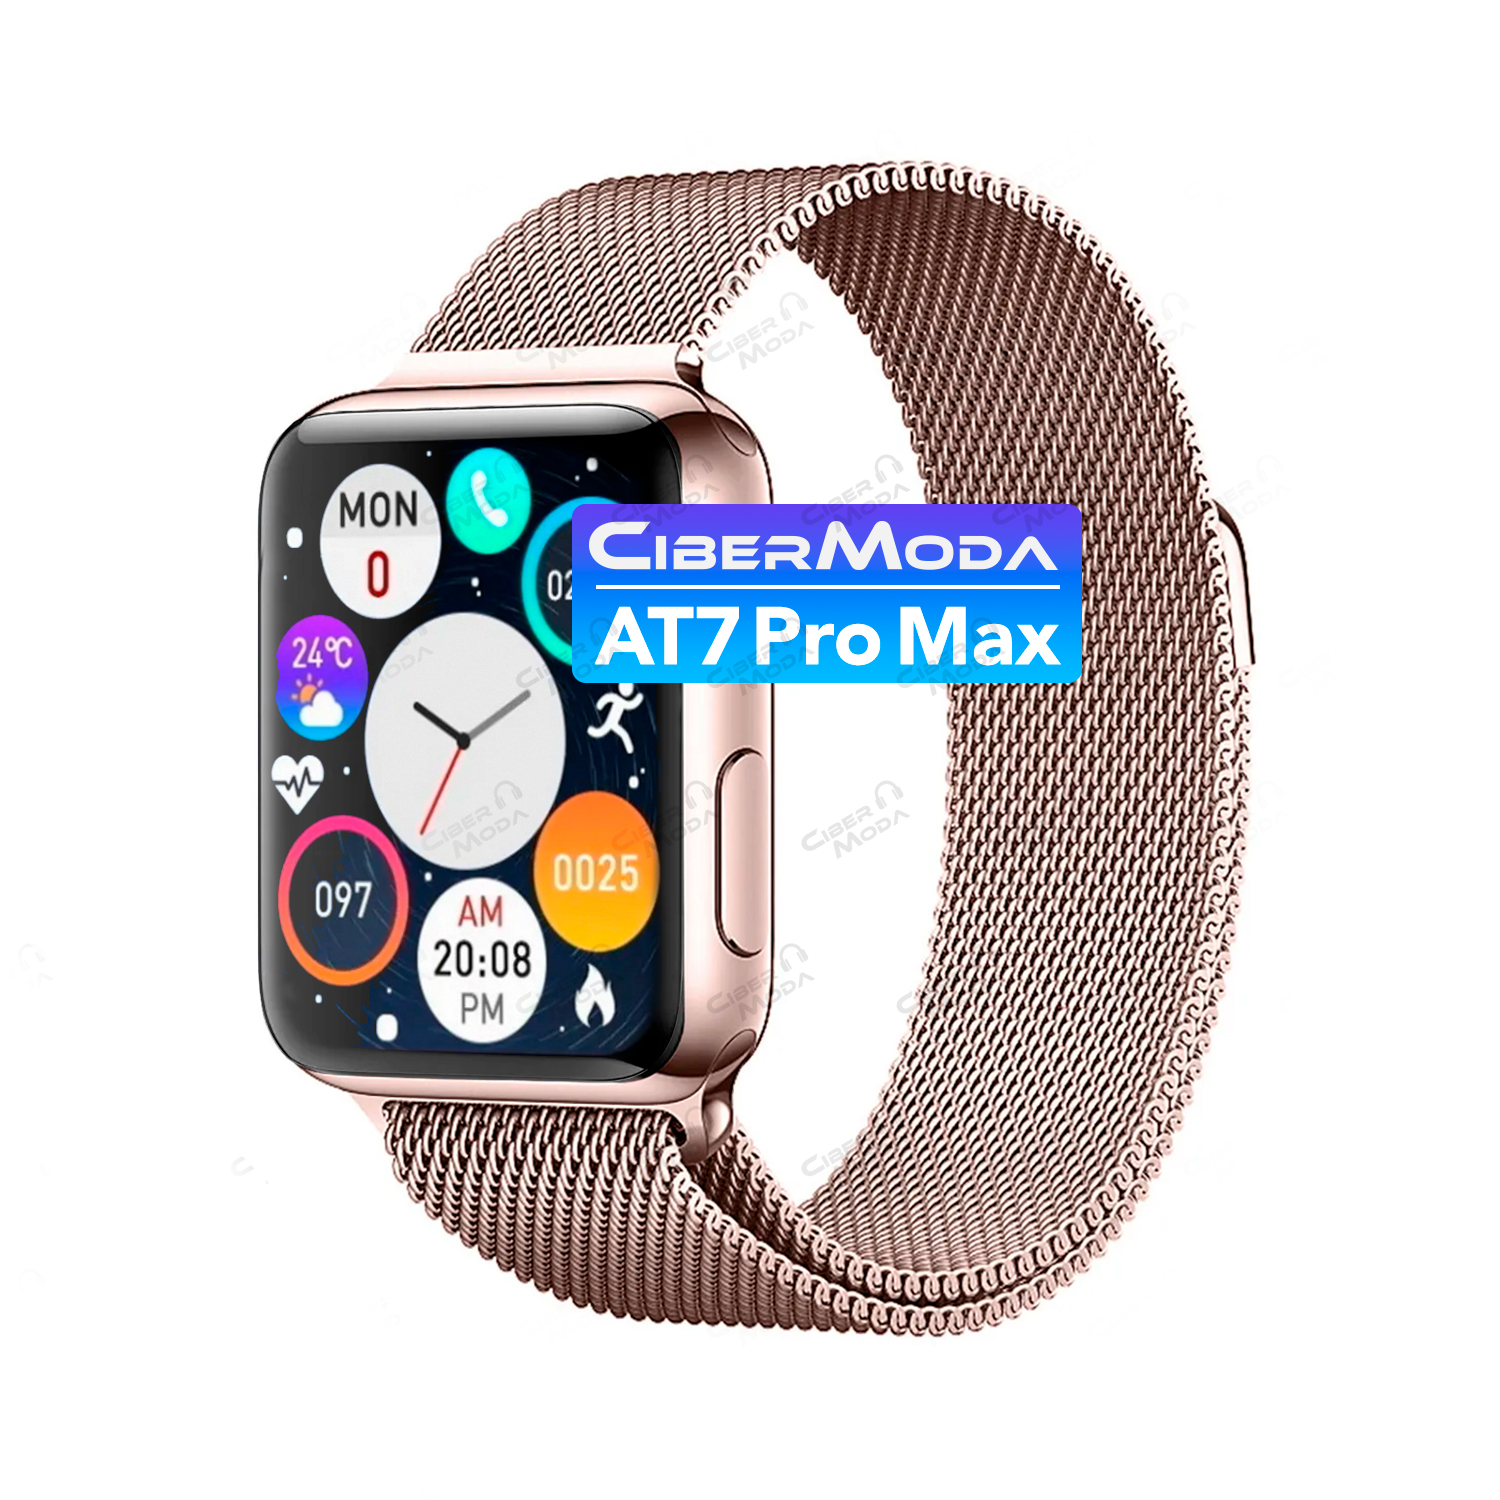 Smartwatch AT 7 PRO MAX - Marcell Telefonía Celular